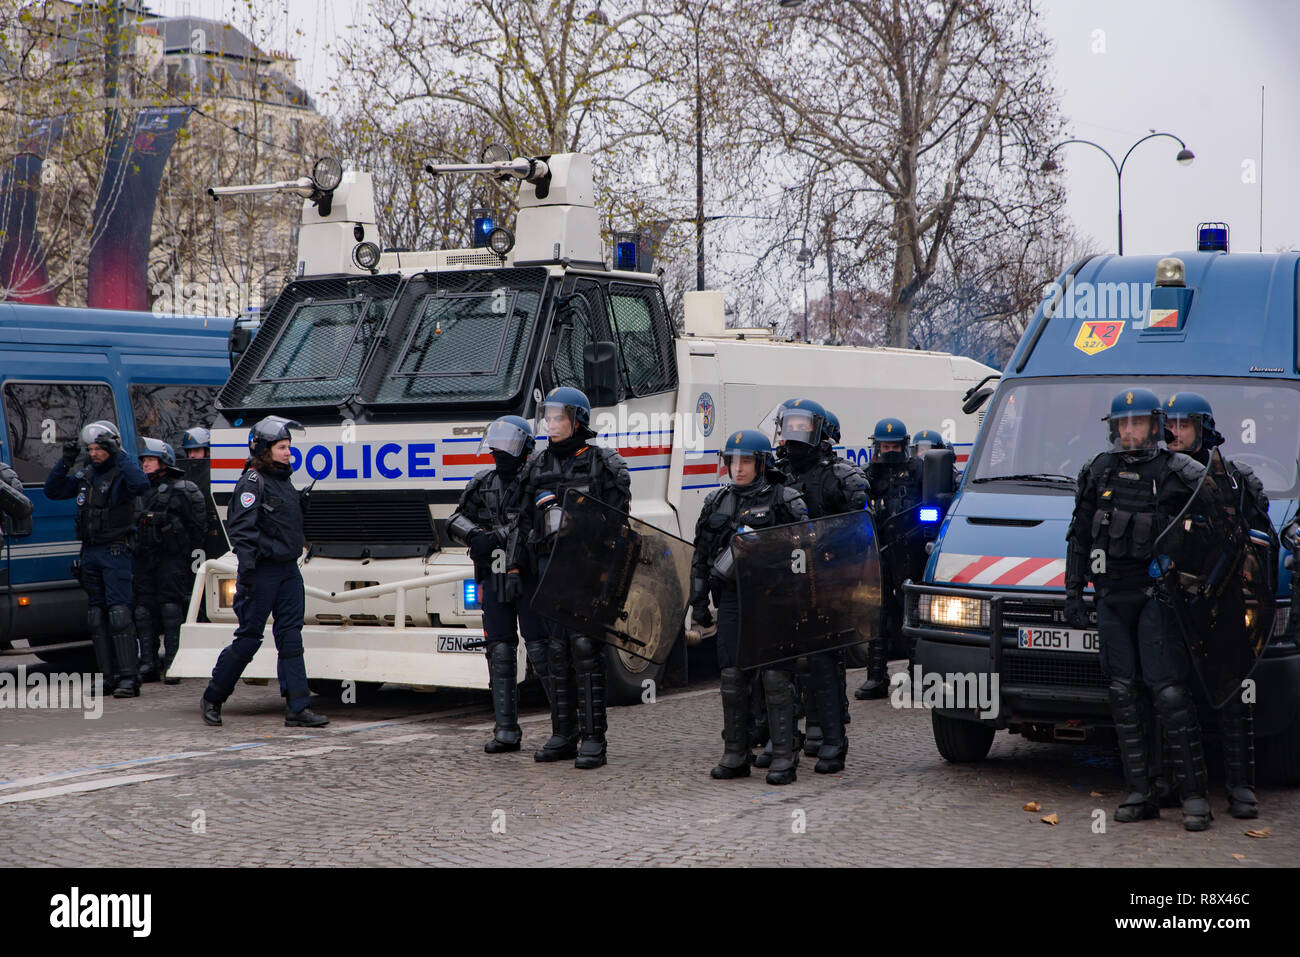 La polizia antisommossa per i giubbotti di giallo di dimostrazione (Gilets Jaunes) manifestanti contro il governo e il presidente francese a Champs-Élysées, Parigi, Francia Foto Stock